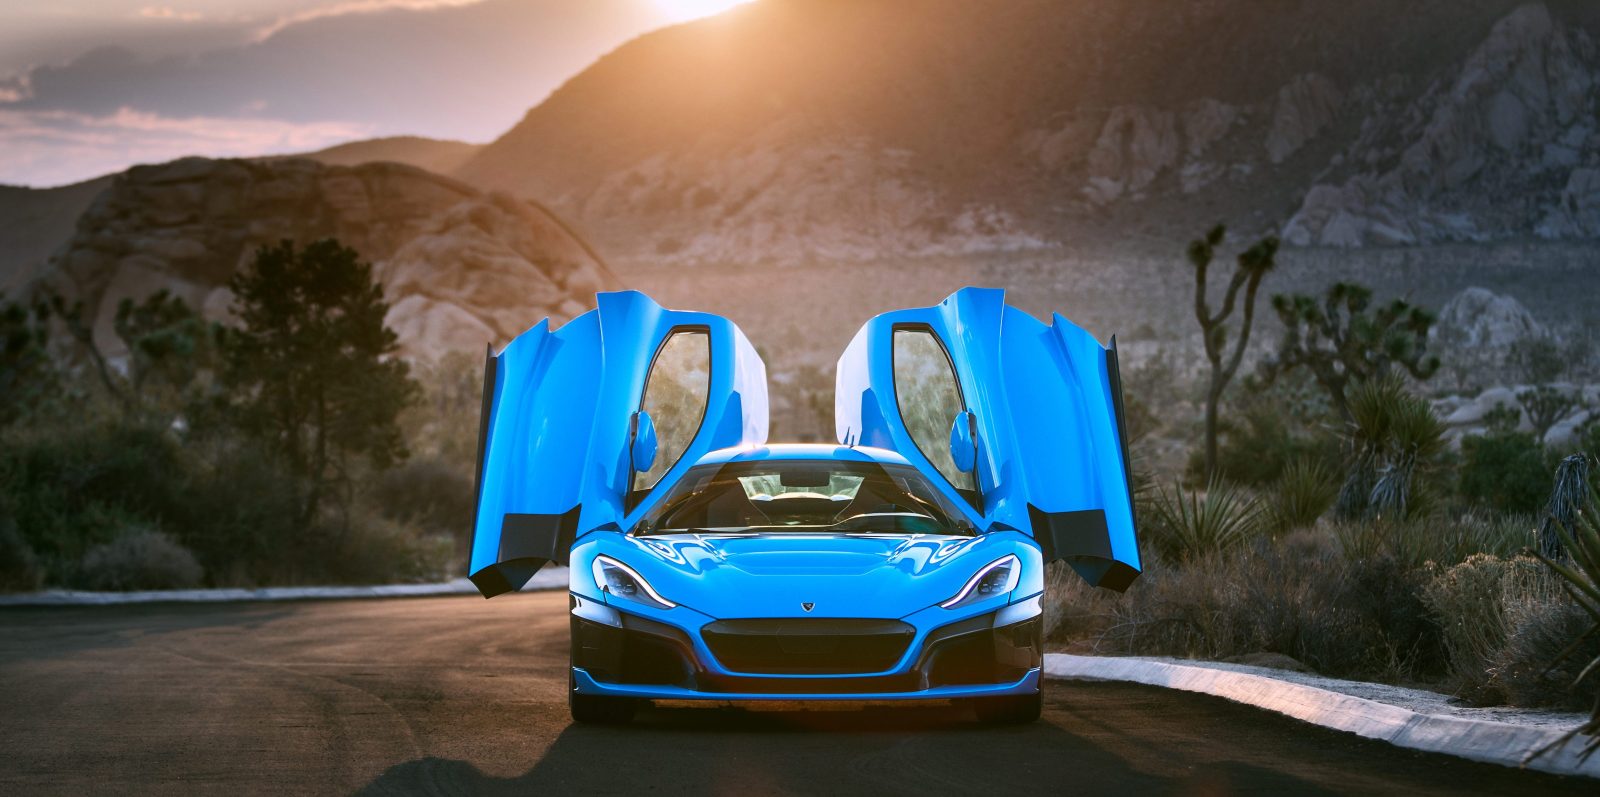 Bugatti, Rimac and Porsche announce joint venture